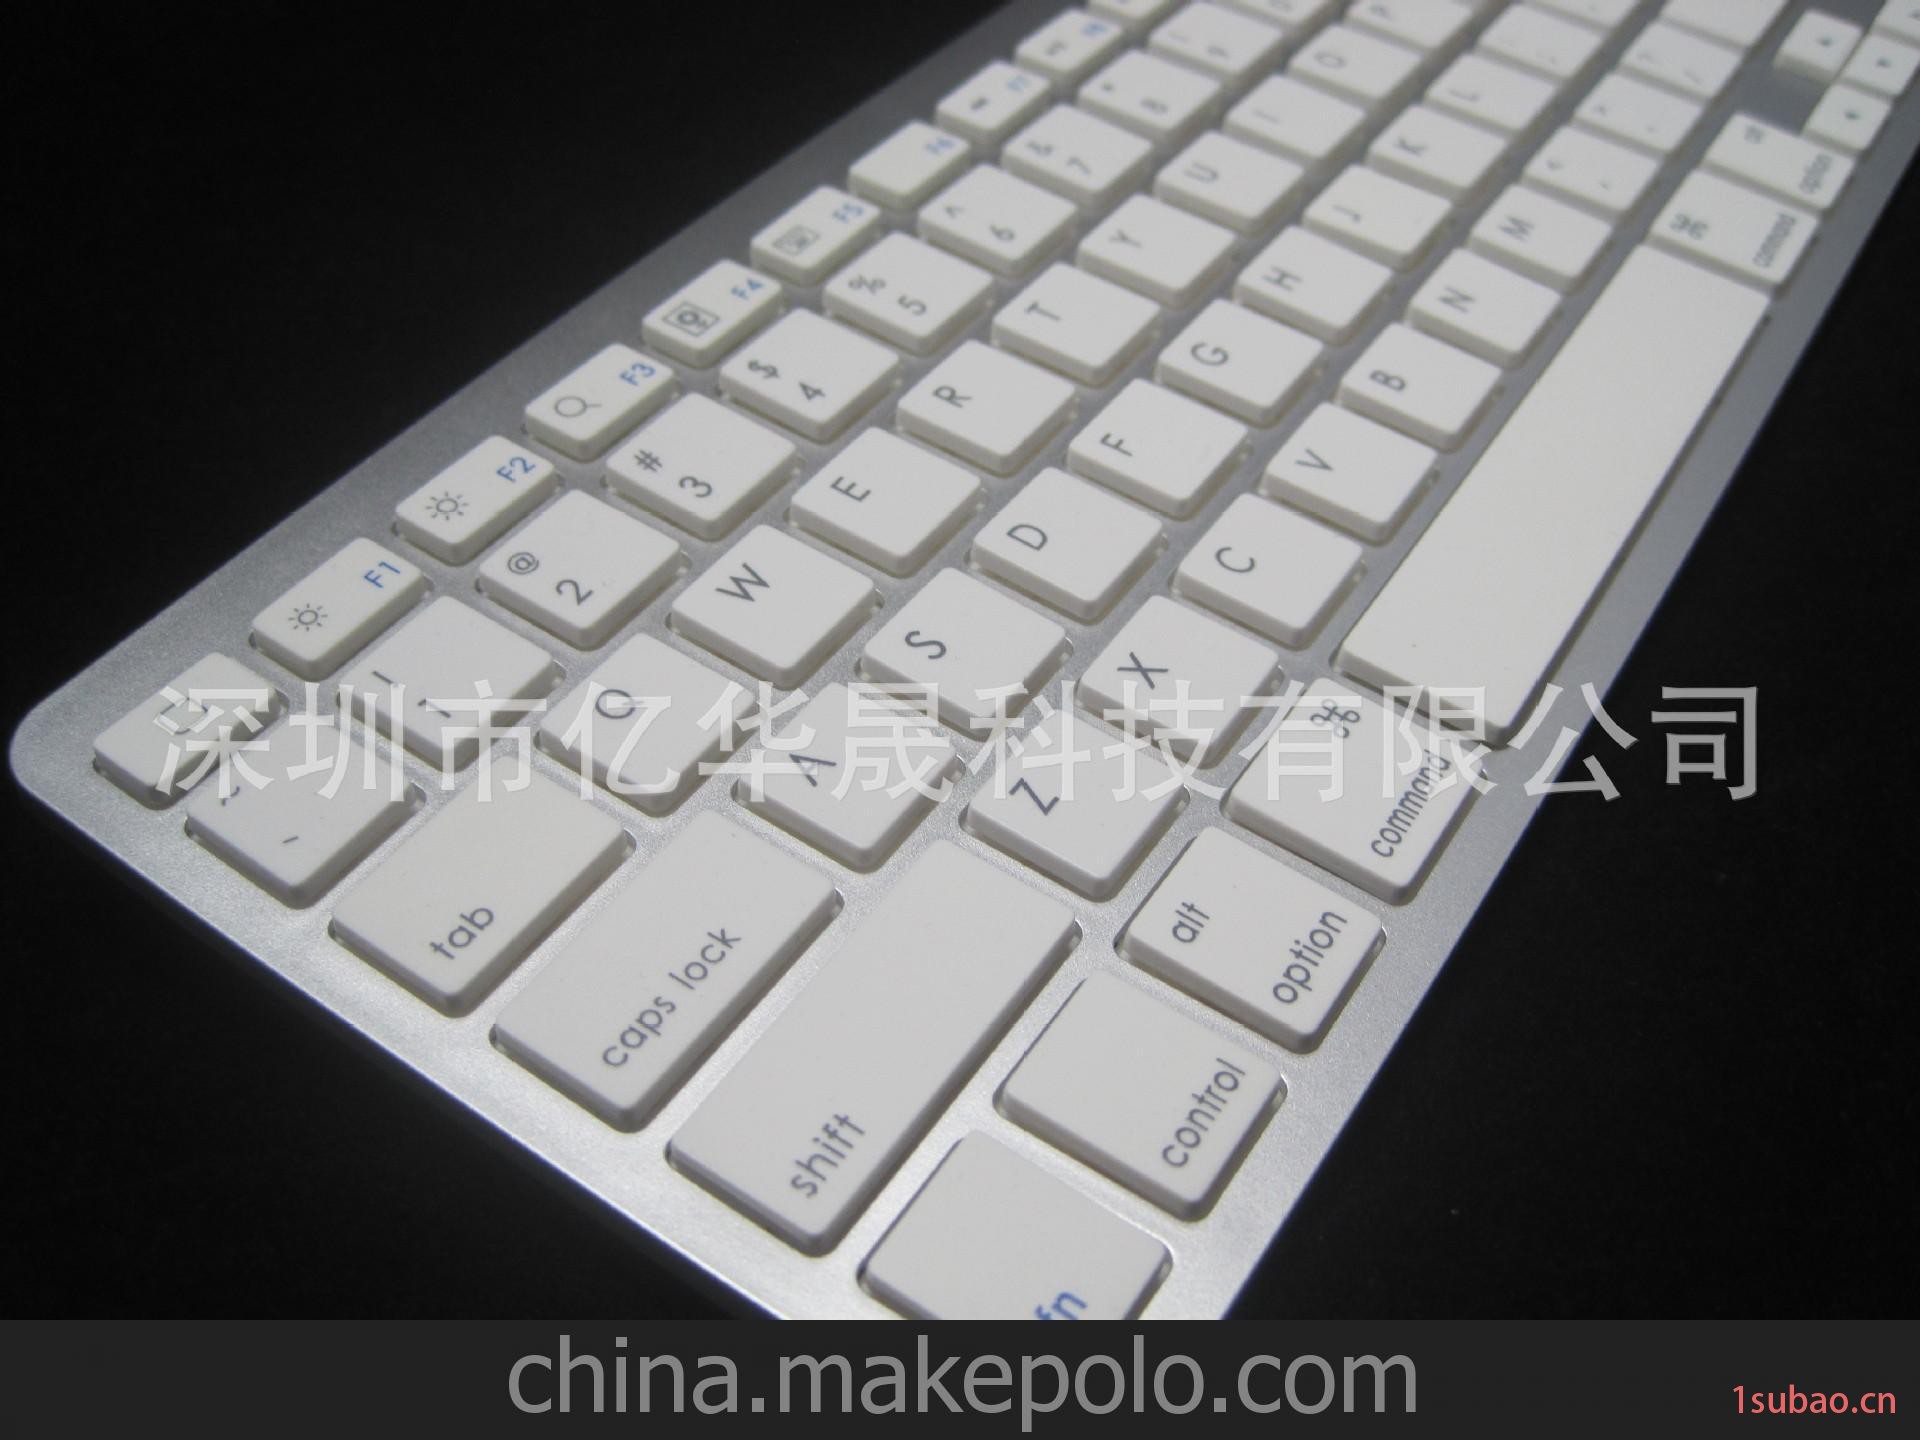 ipad蓝牙键盘 塑胶材质 苹果系统电脑键盘都适用 厂家直销干电池